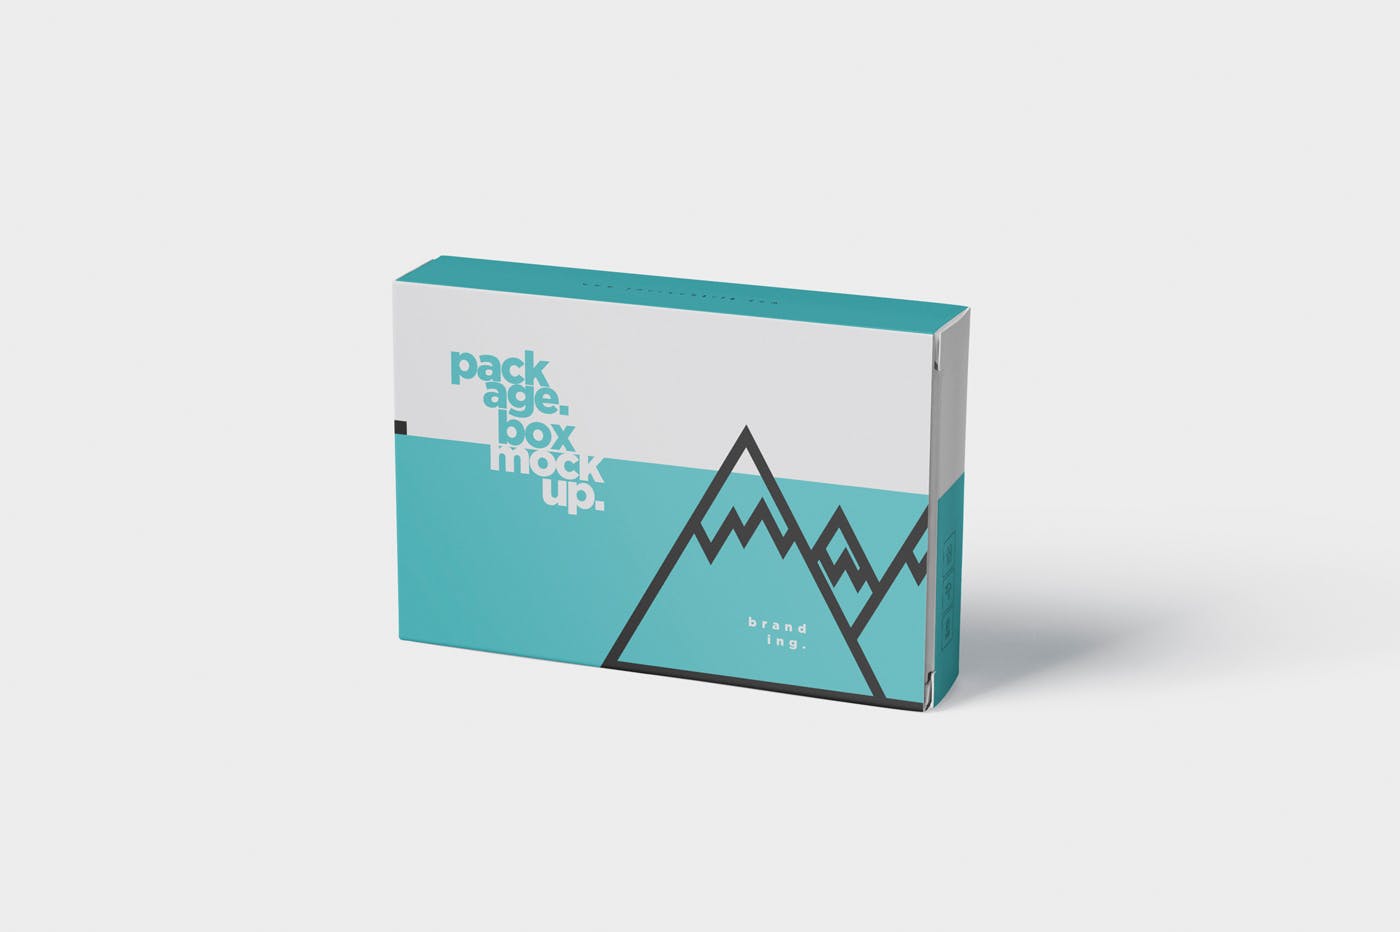 扑克牌大小扁平包装纸盒外观设计素材中国精选模板 Package Box Mock-Up – Wide – Flat Rectangle Shape插图(5)